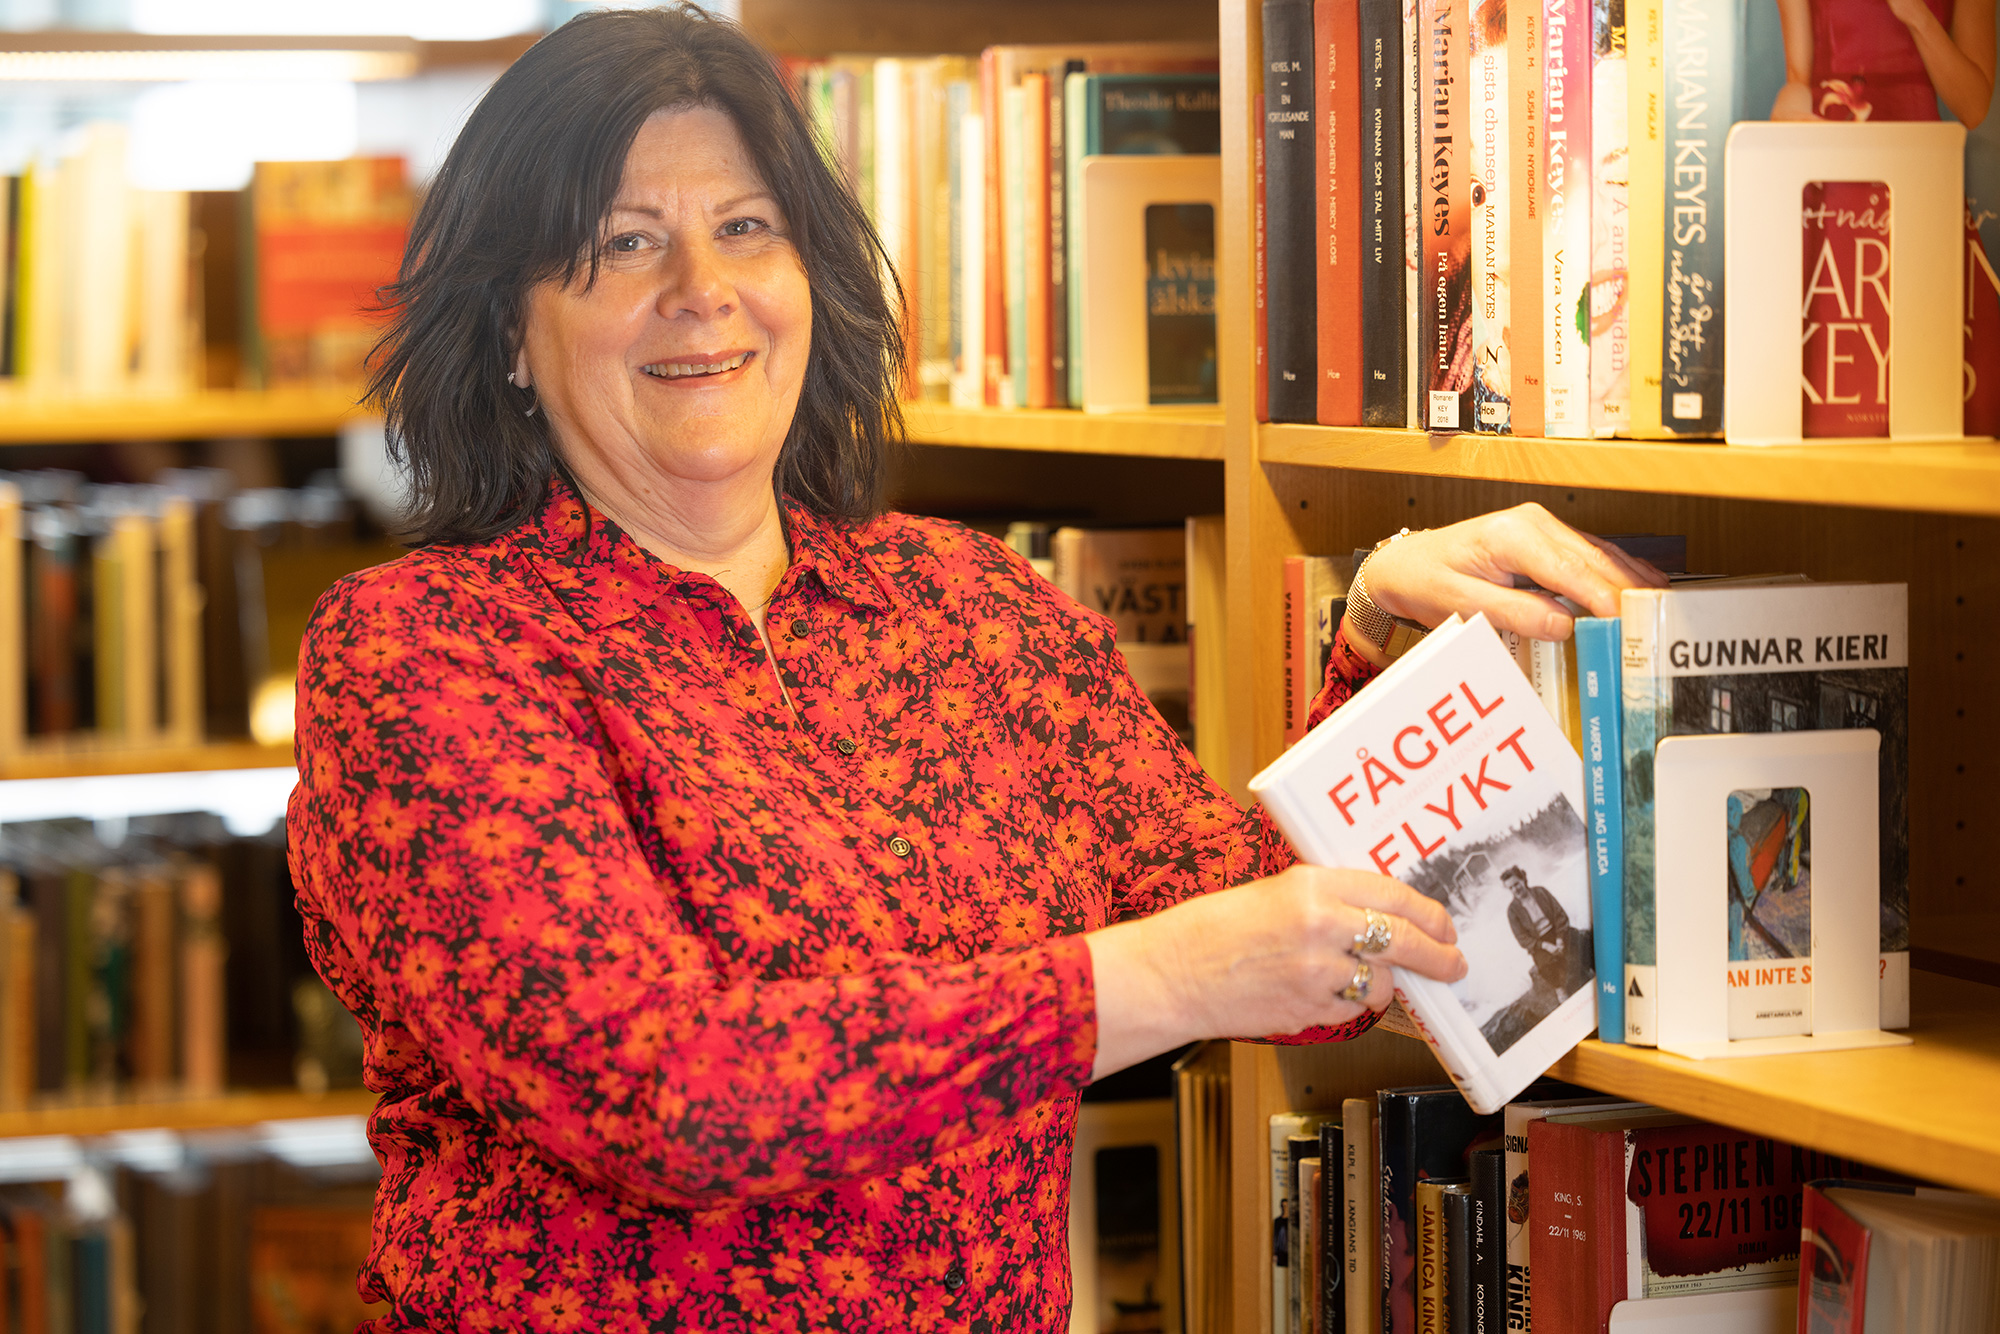 Anne-Christine Liinanki håller i sin bok Fågelflykt inne på biblioteket i Kulturens hus i Luleå